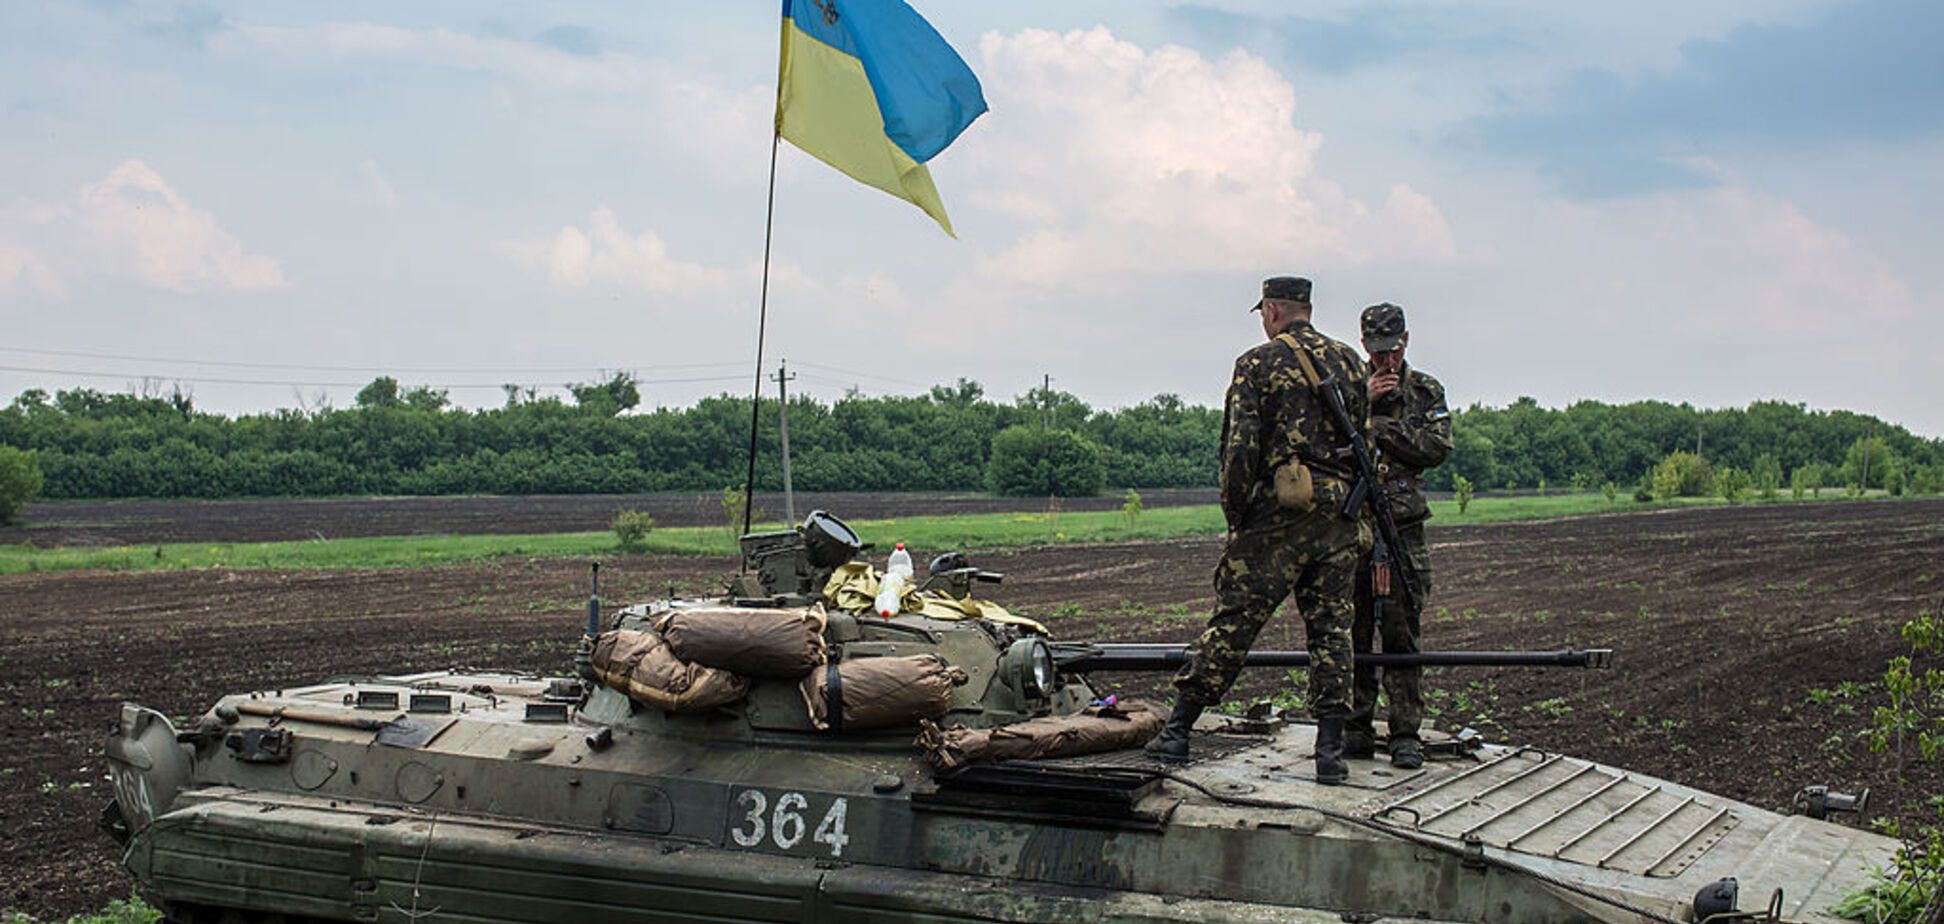 Ситуация на Донбассе обострилась: есть раненые среди бойцов АТО